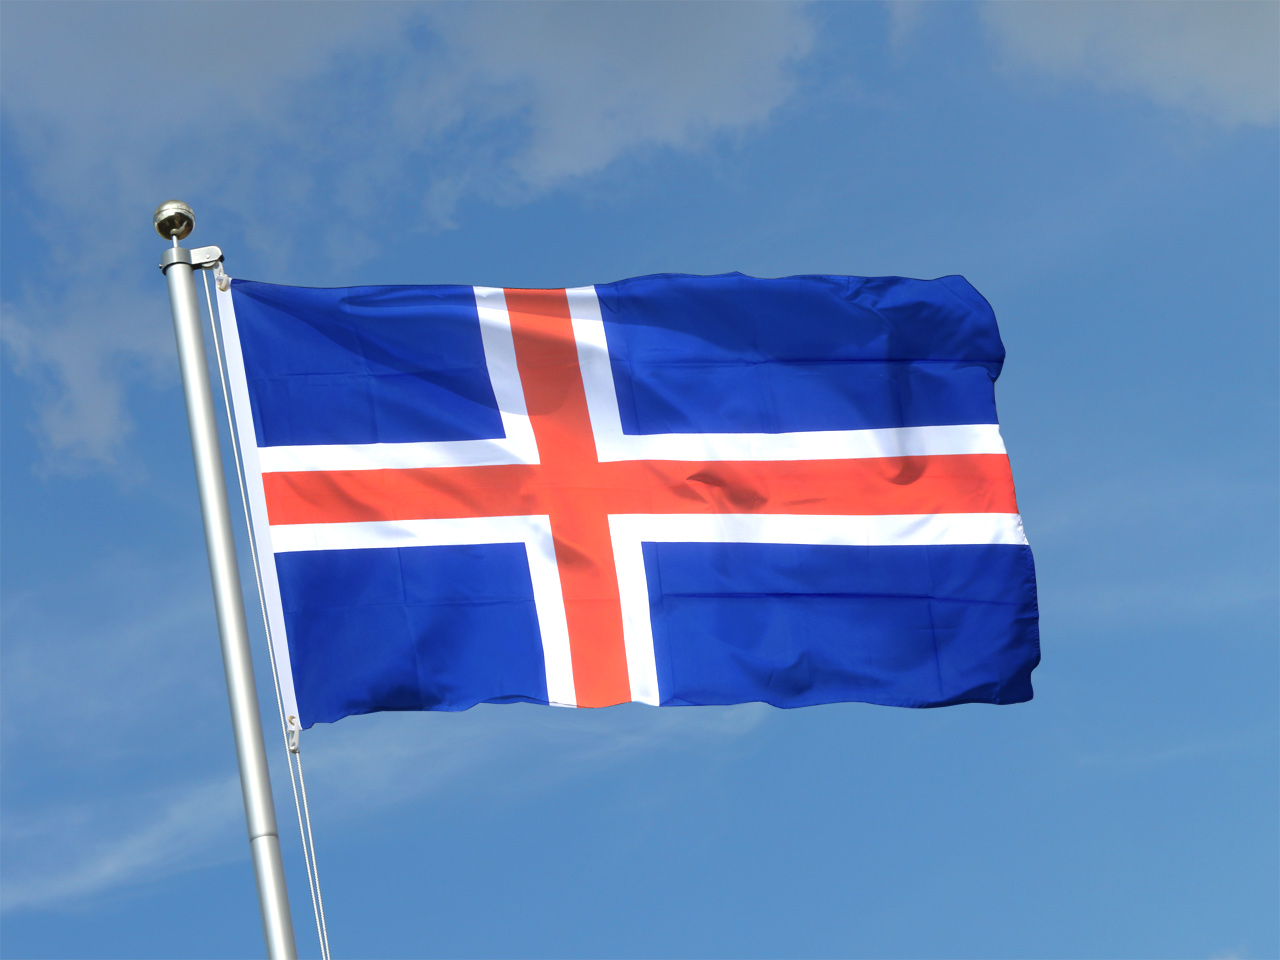 Island Hissflagge isländische Fahnen Flaggen 150x250cm 